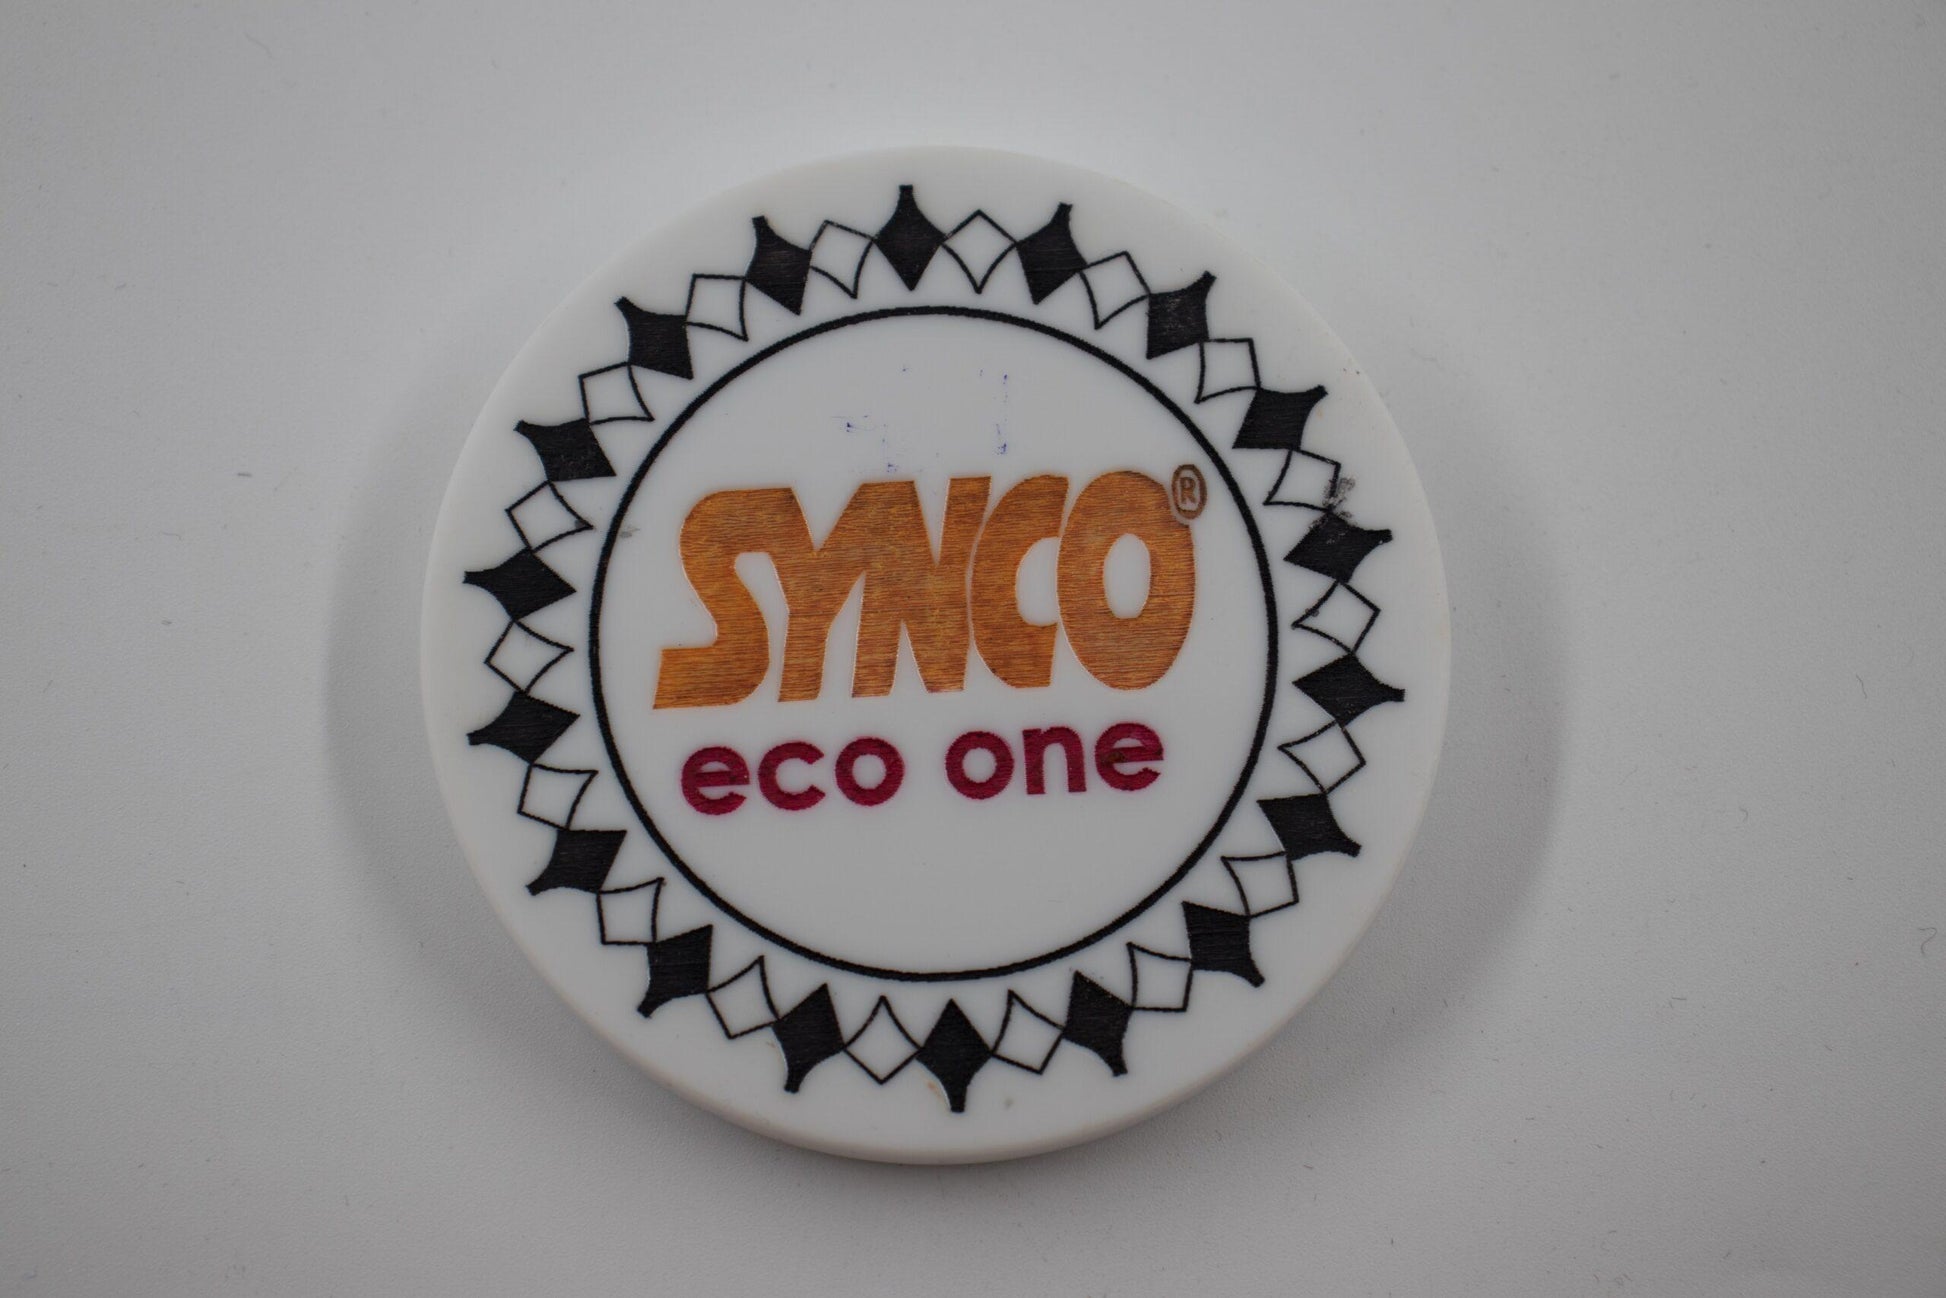 Synco Eco One Carrom Board Striker - 1